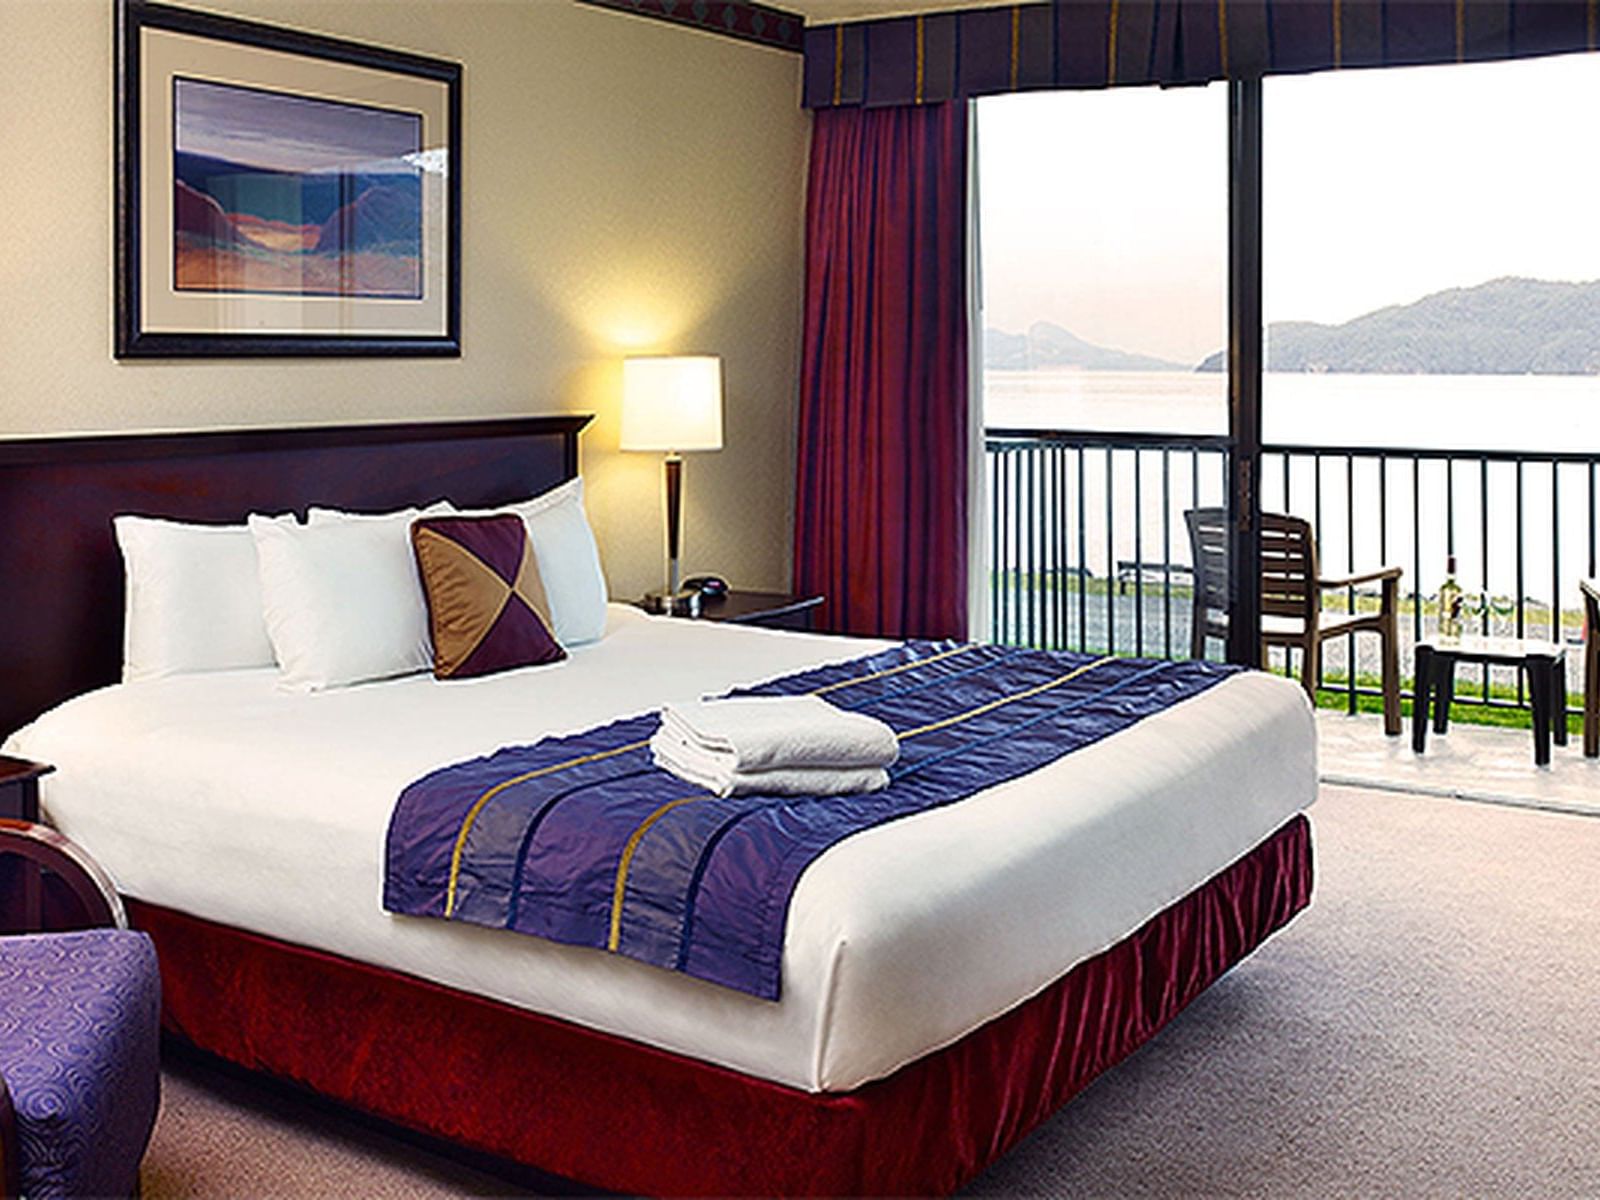 bed in hotel room with balcony overlooking ocean